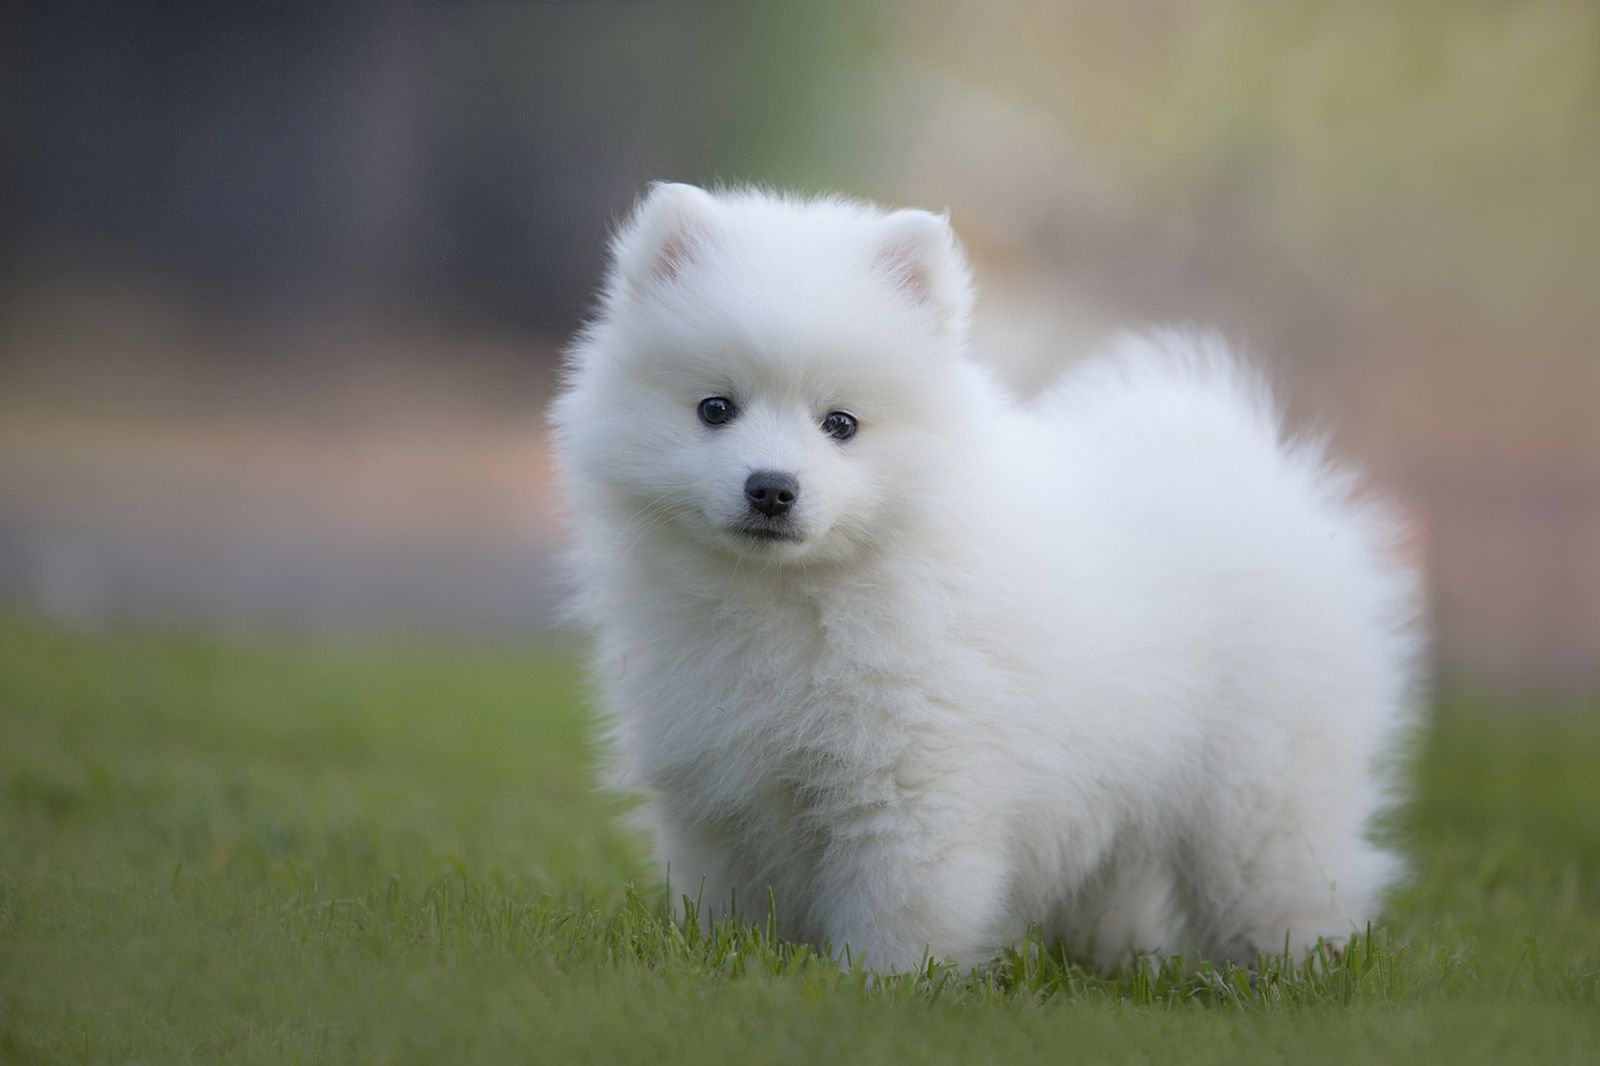 Ein weißer japanischer Spitz Hund steht leicht seitlich positioniert auf der grünen Wiese und schaut konzenriert zum Betrachter